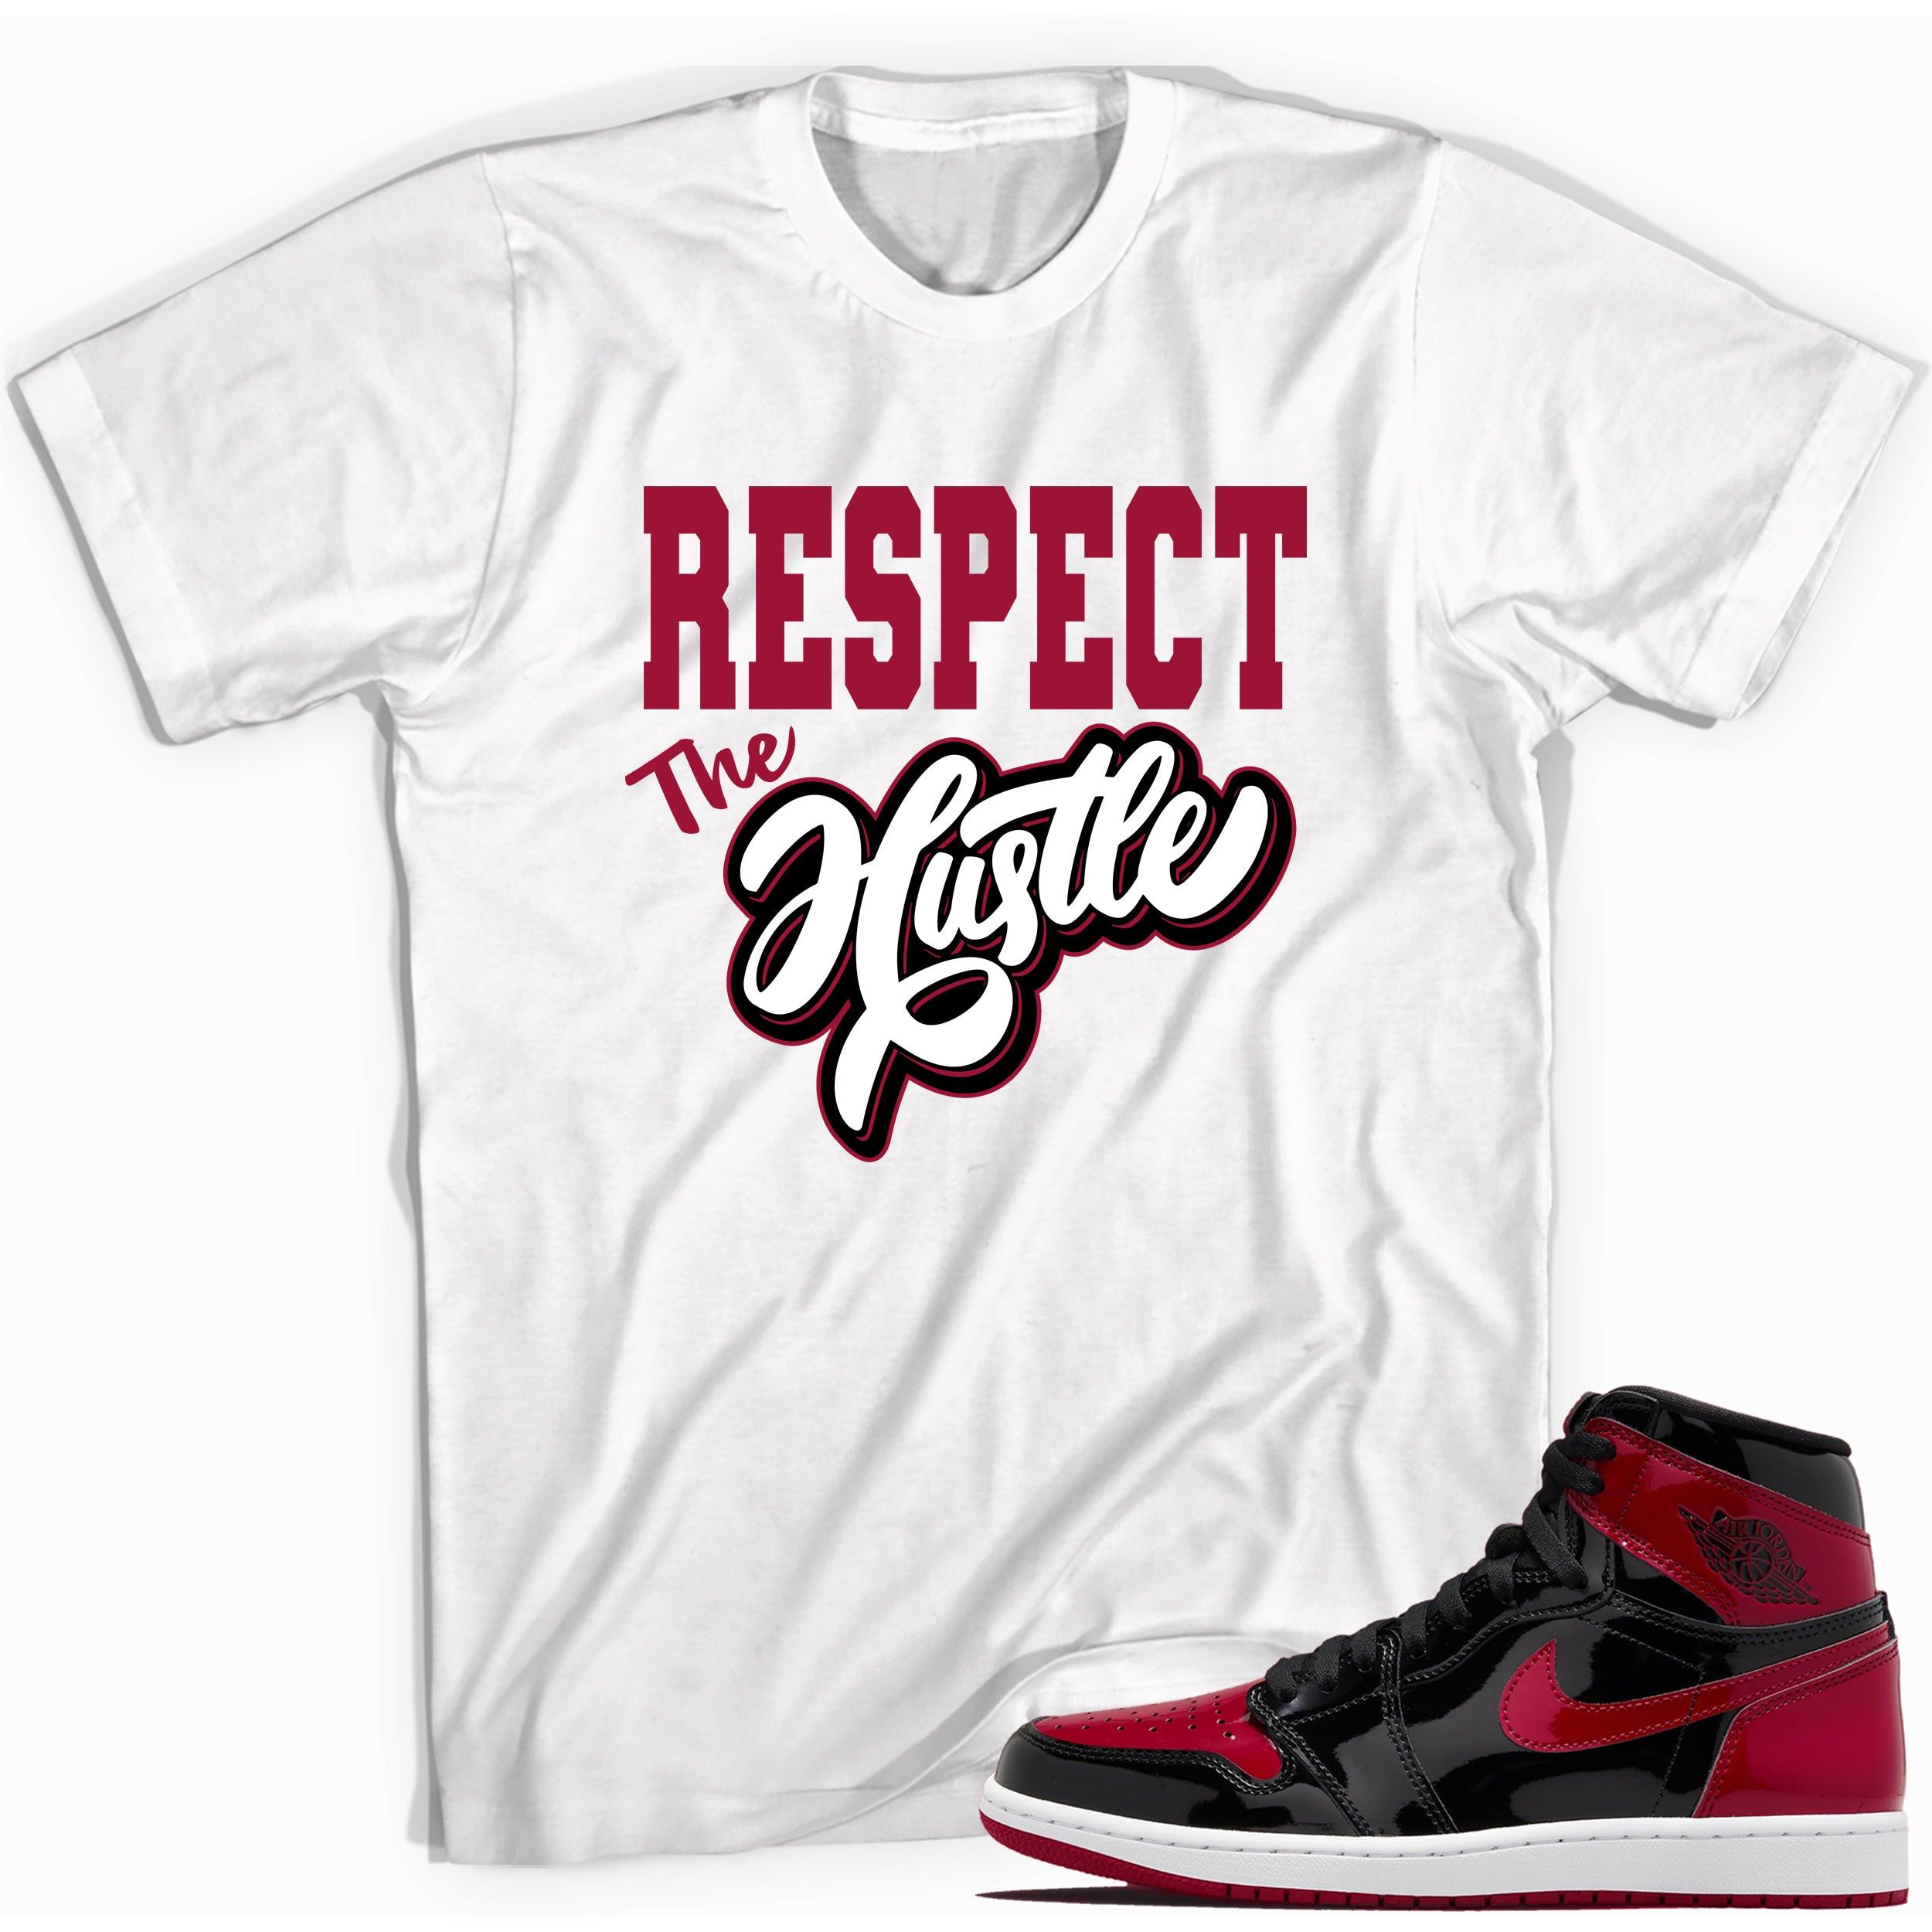 White Respect The Hustle Shirt for Jordan 1s Bred Patent photo